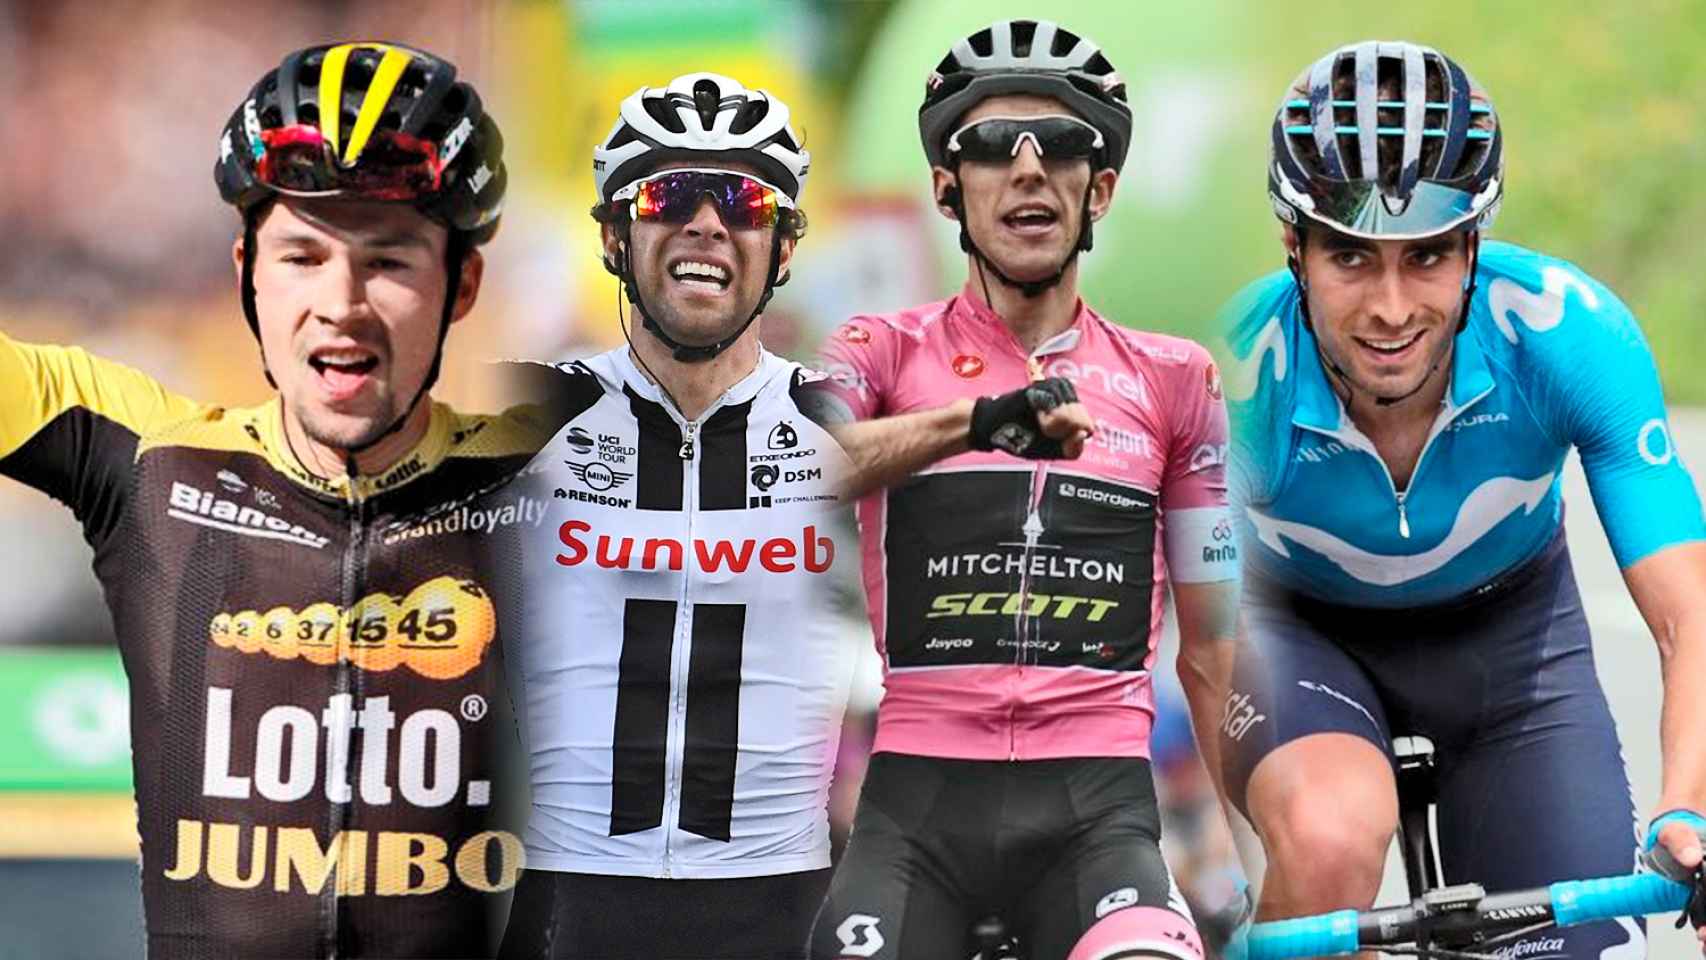 Golpeteo Altoparlante competencia Roglic, Dumoulin y la esperanza española de Landa: los favoritos en el Giro  de Italia 2019